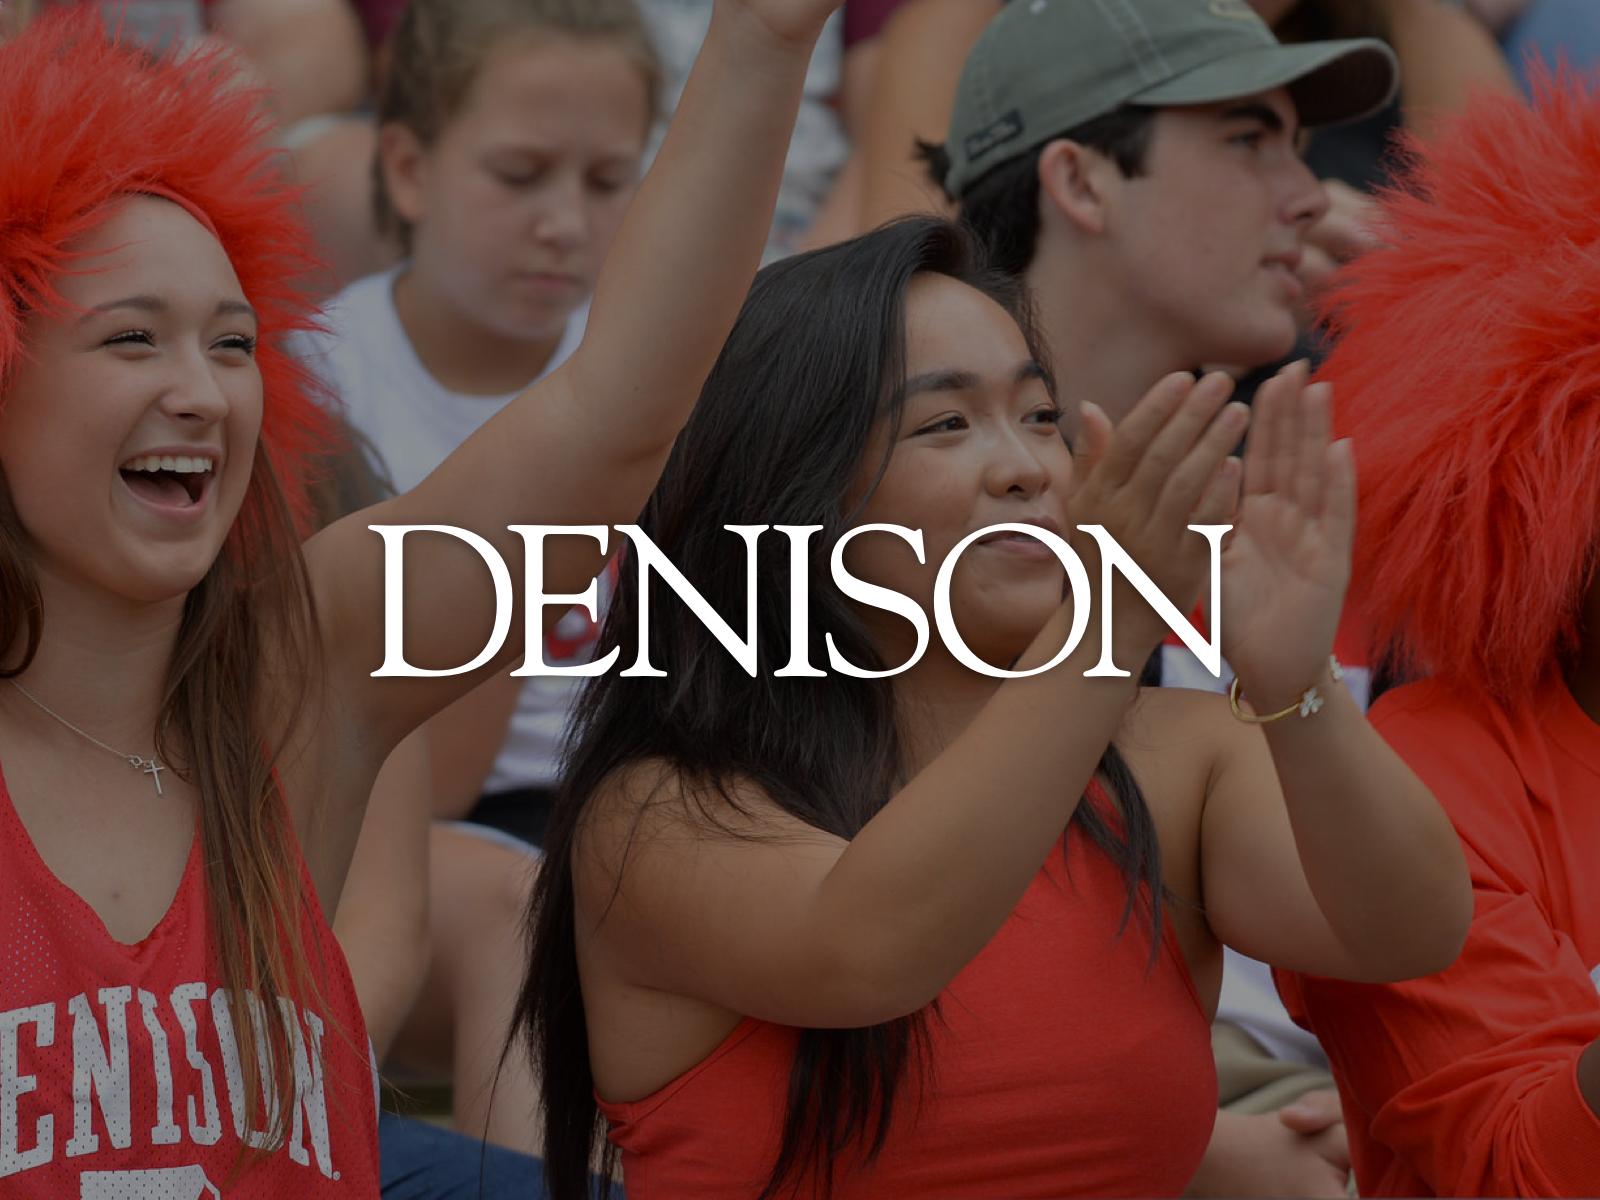 Denison University Image 